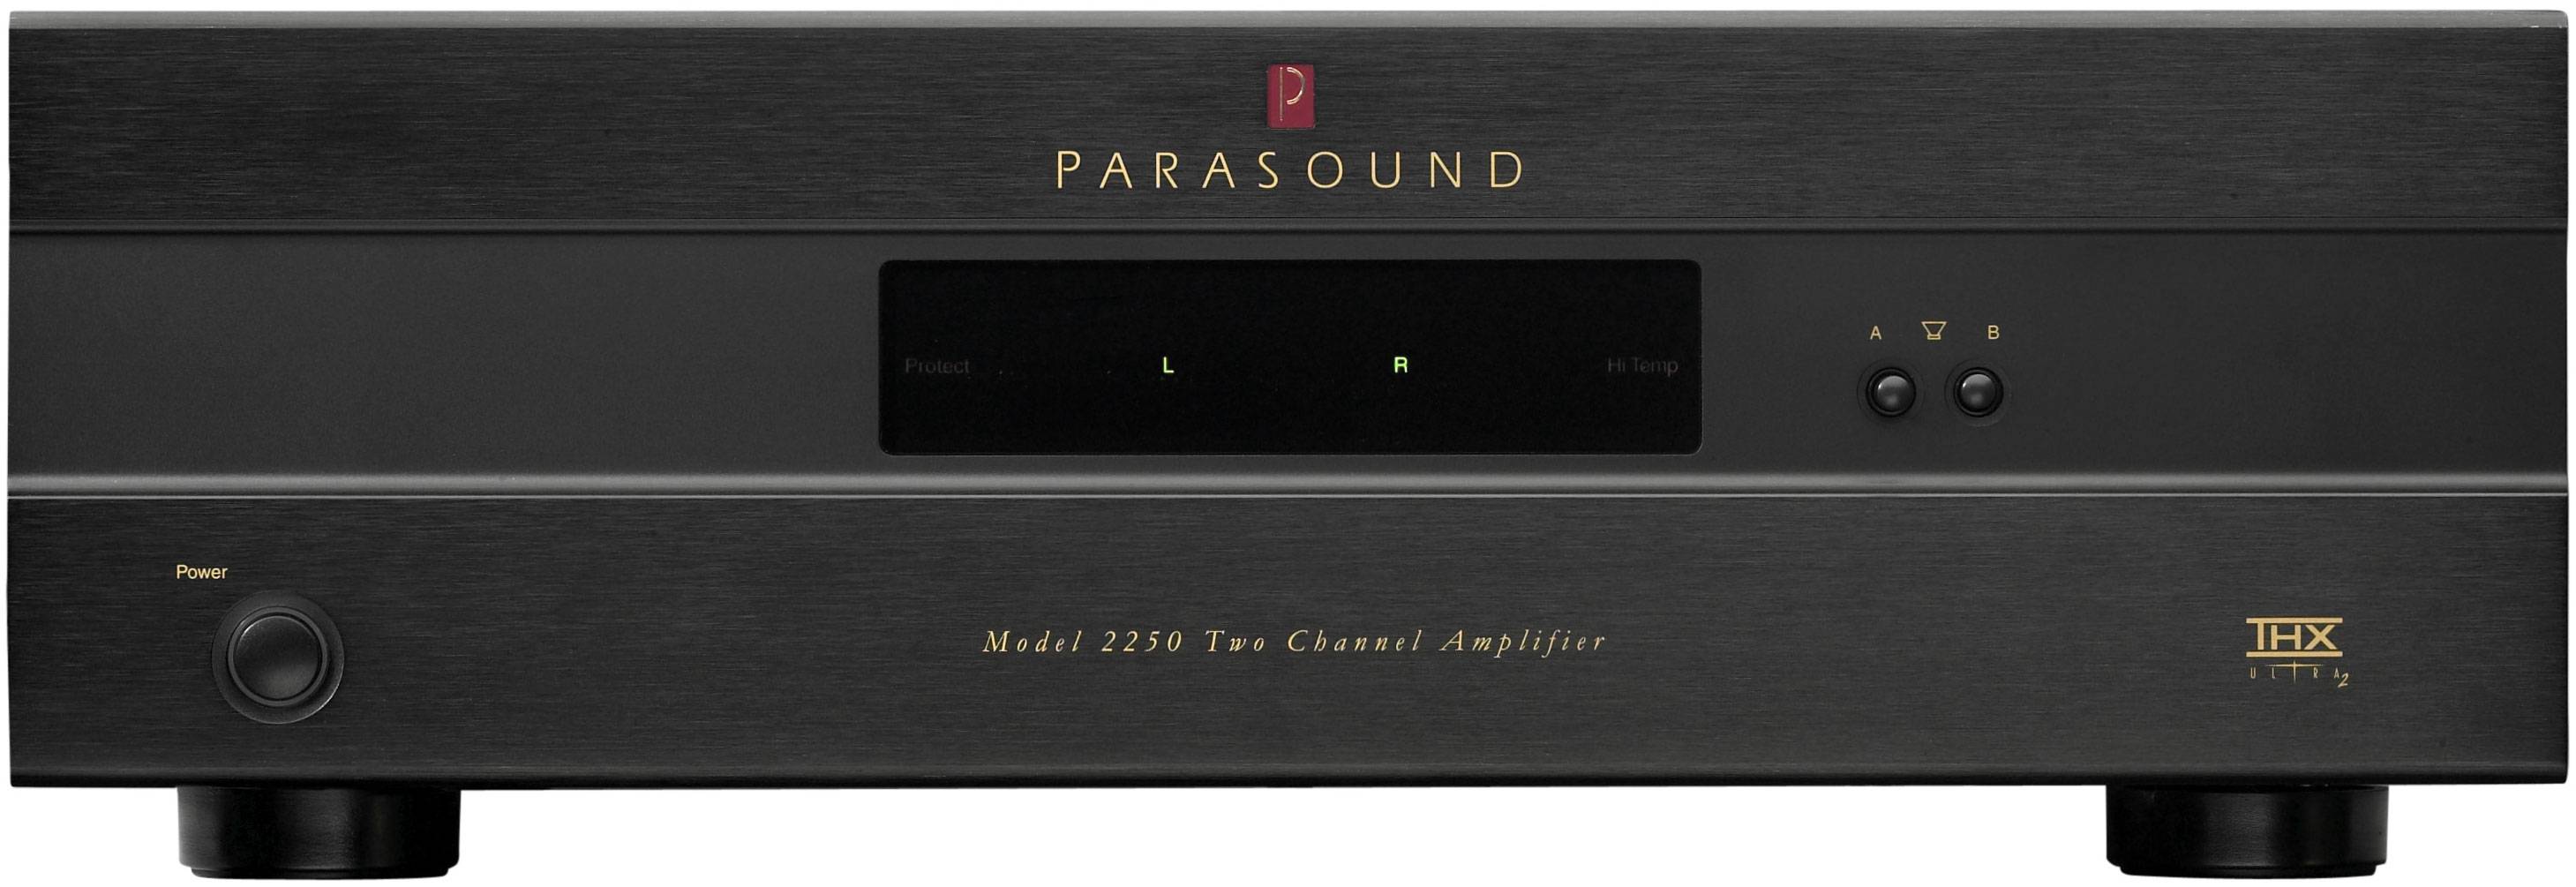 Parasound Model 2250